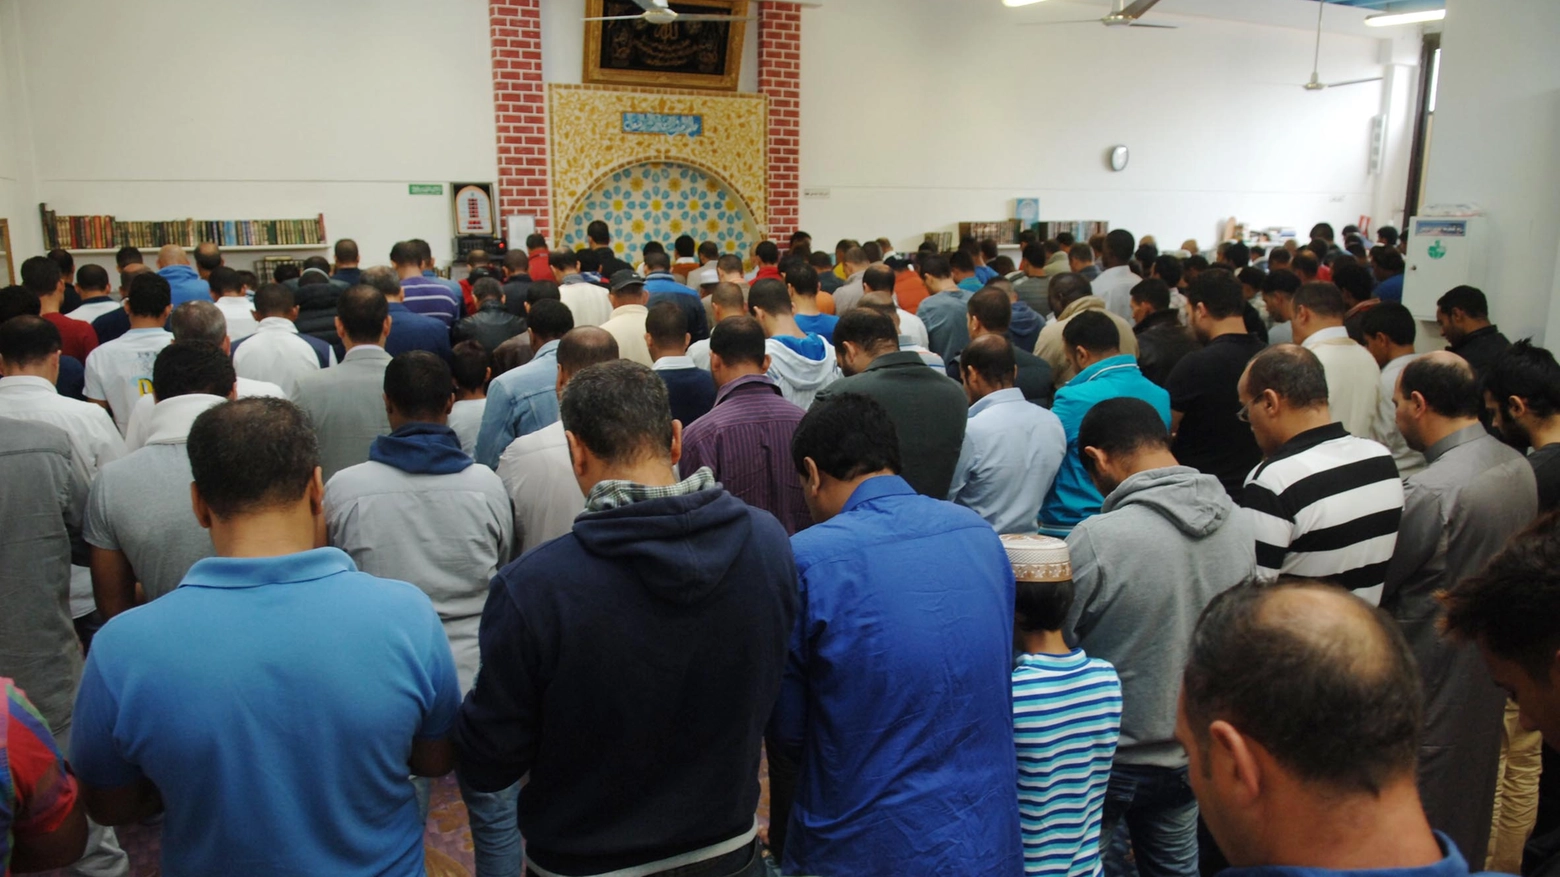 Preghiere in una moschea 